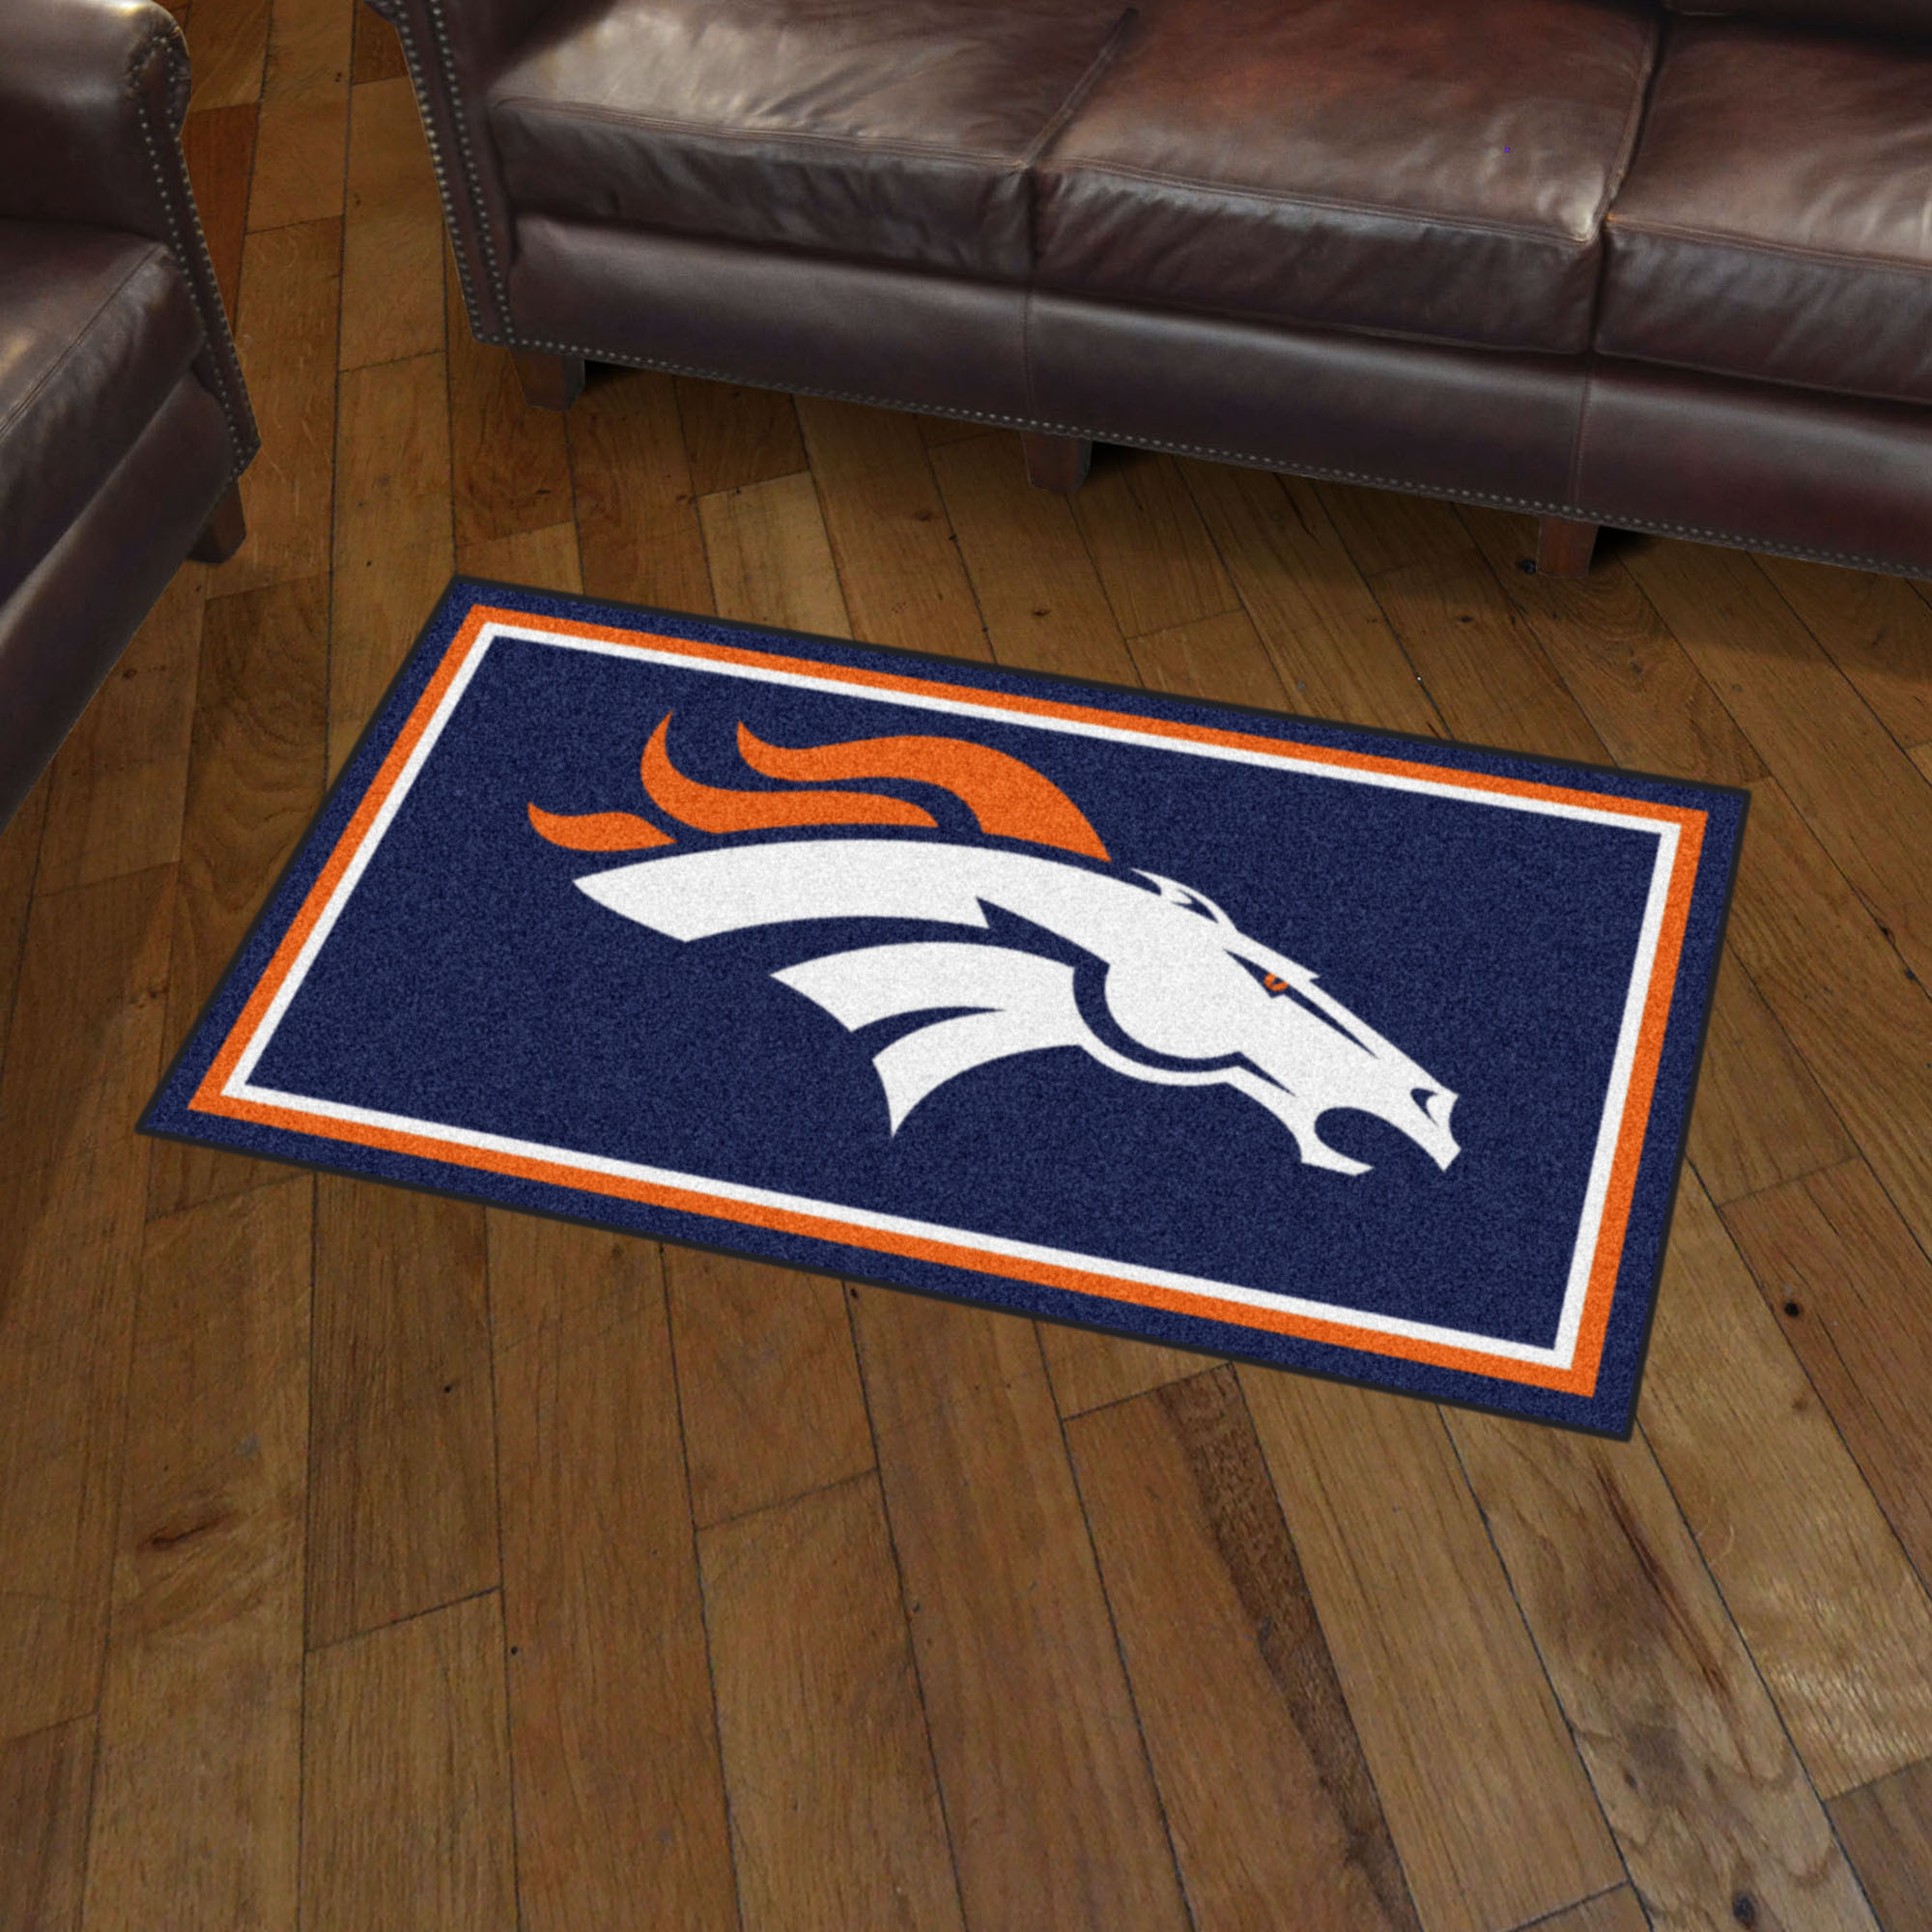 Denver Broncos Area rug - 3â€™ x 5â€™ Nylon